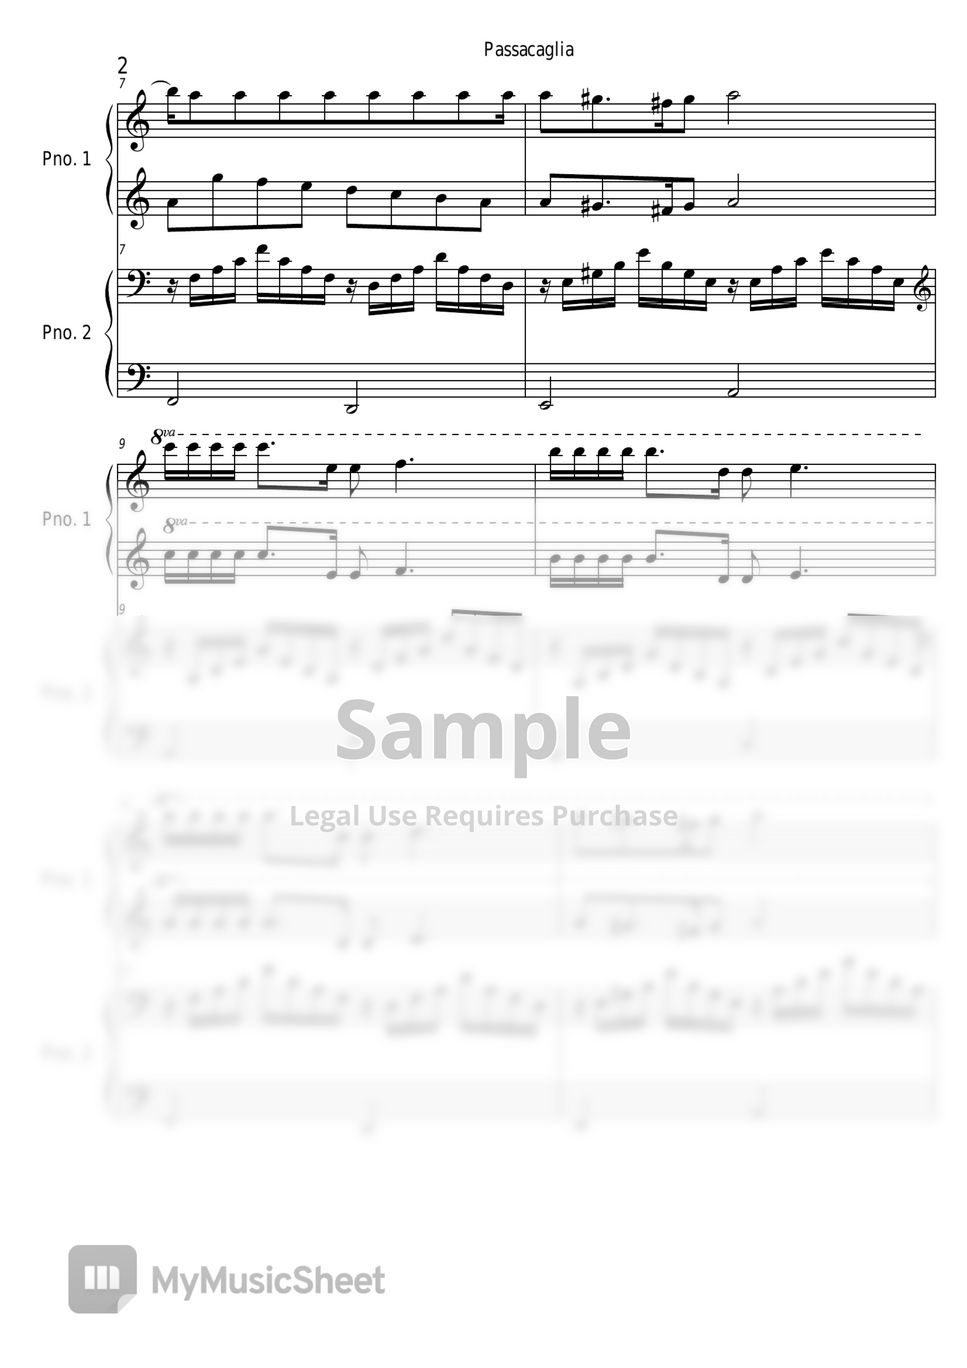 Handel/Halvorsen - Passacaglia (4 hands, easy) by Pianist Jin